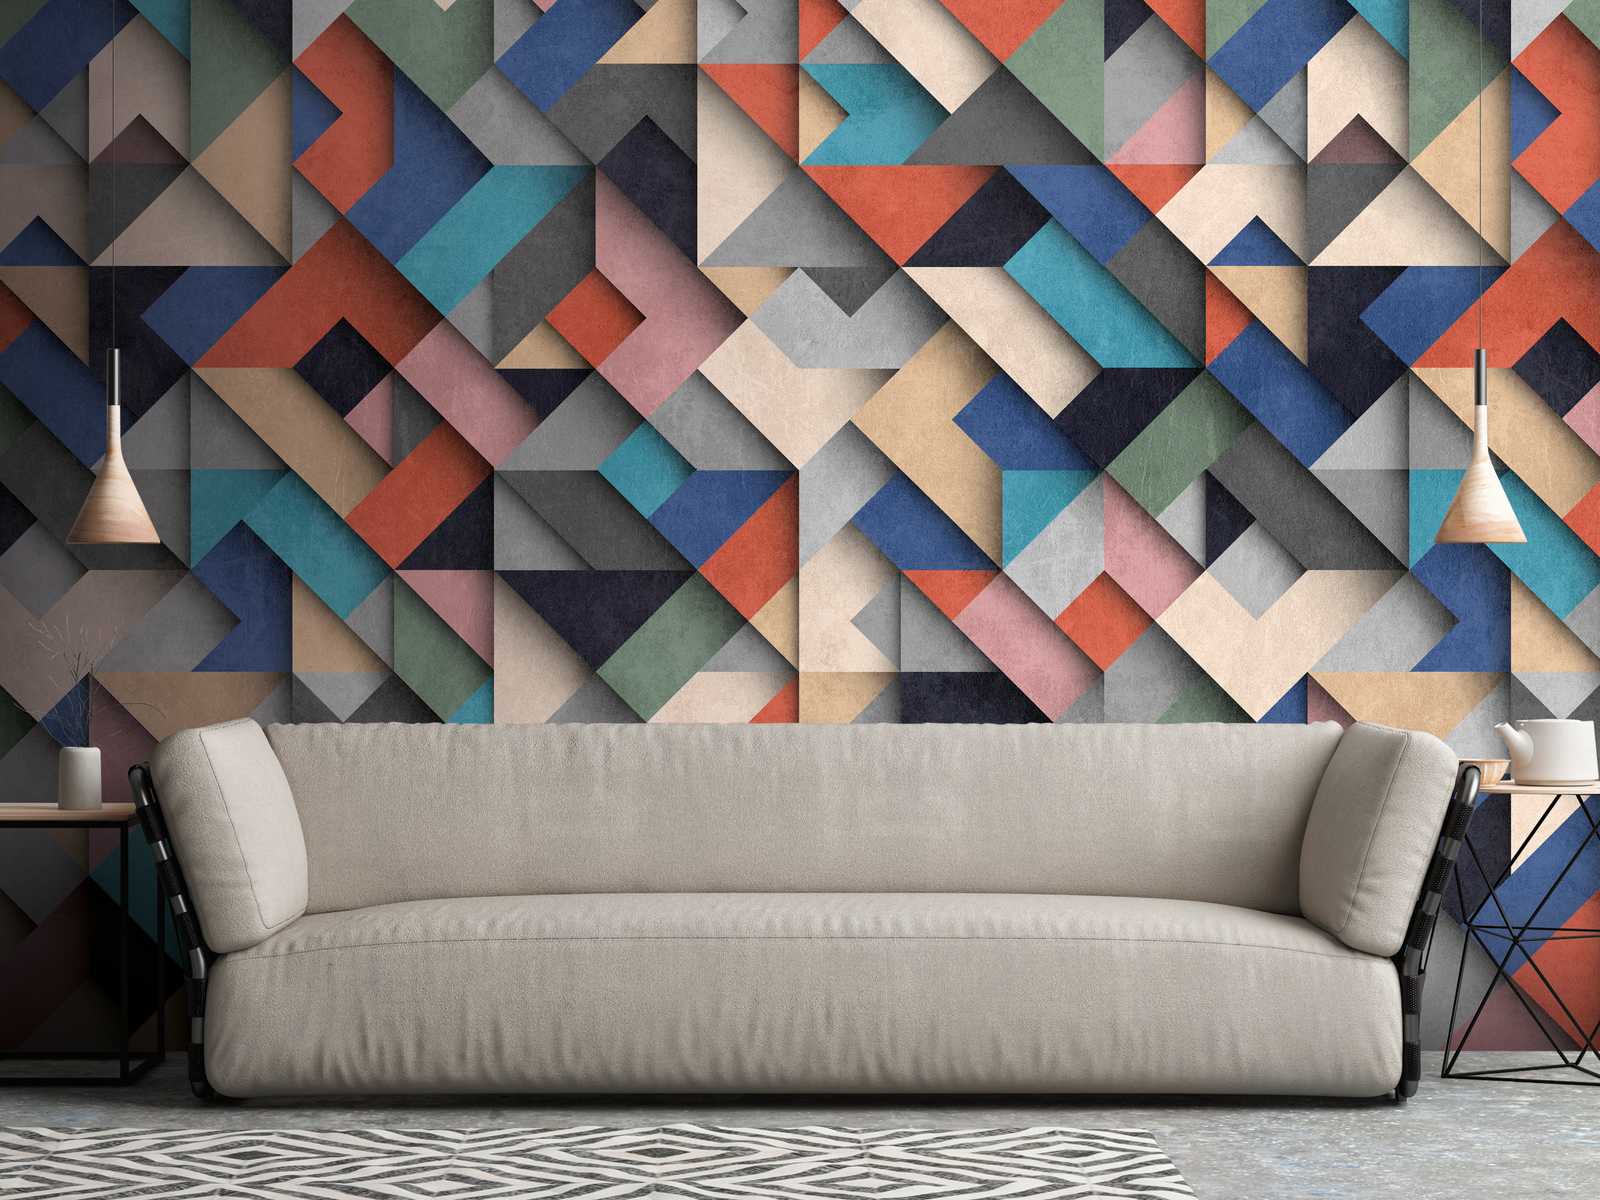             Behang noviteit | 3D motief behang met geometrisch kleurblok design
        